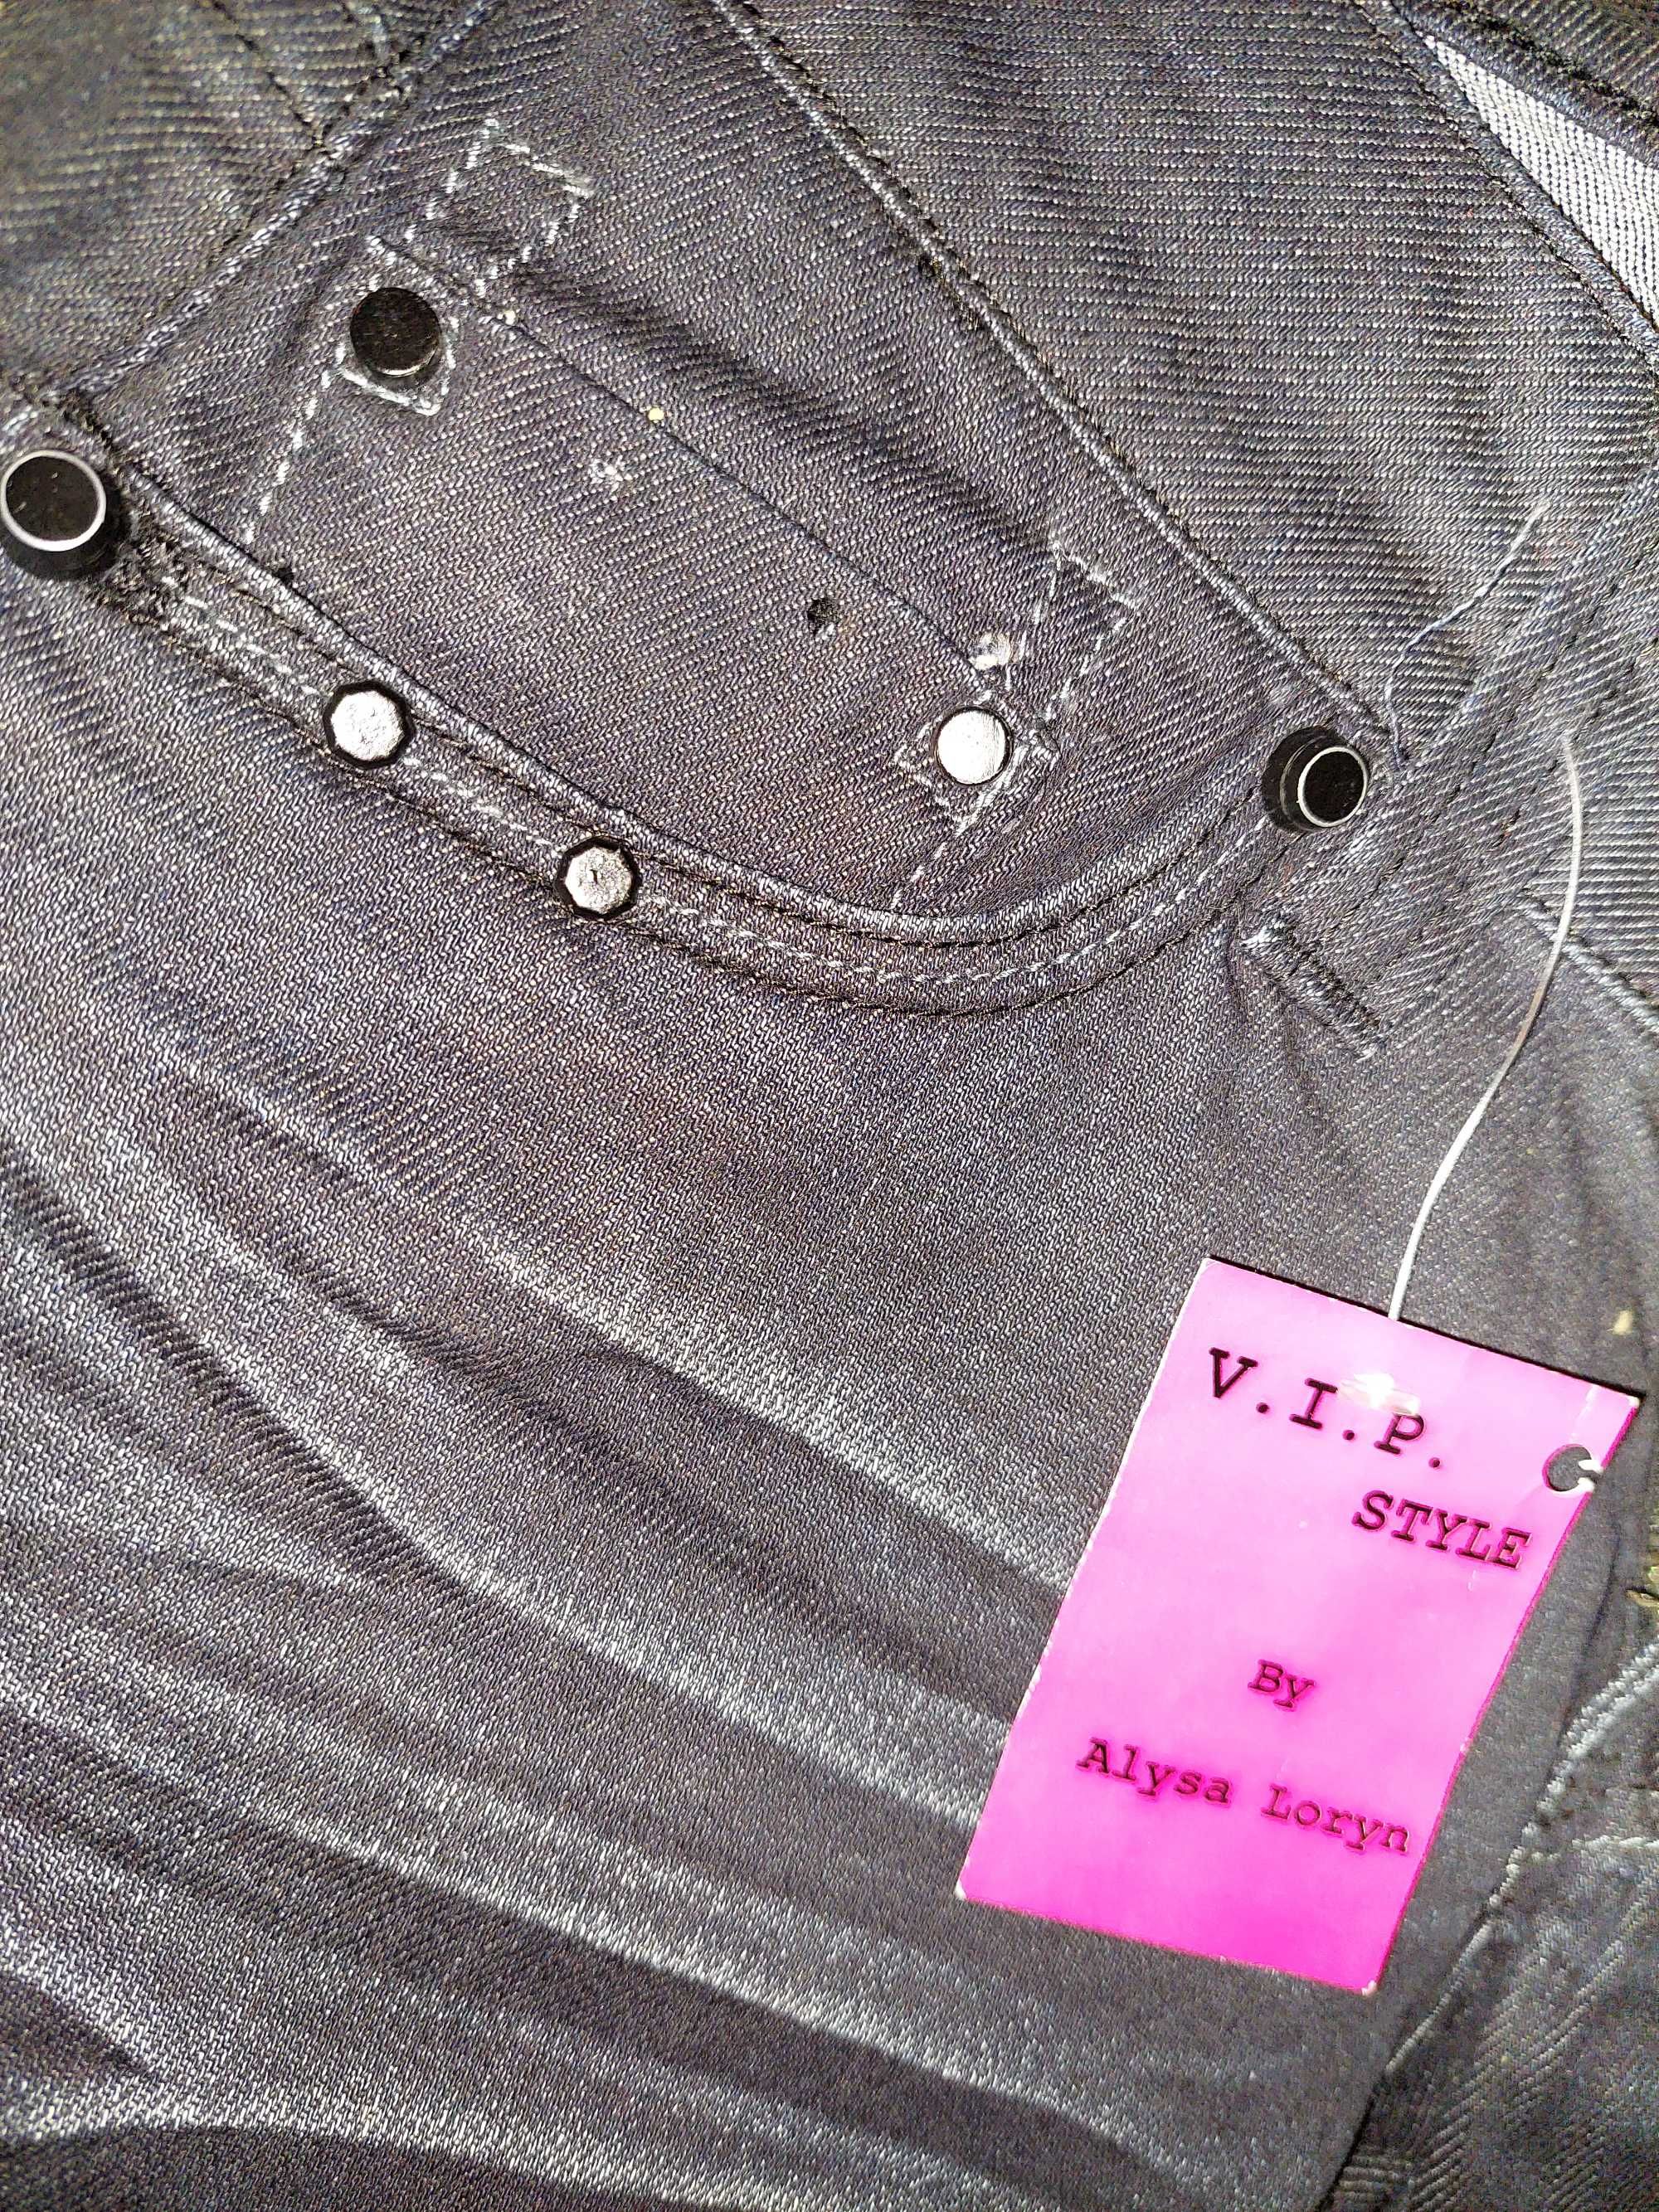 Blugi/jeans cu bijuterii si strasuri negre TRANSPORT GRATUIT